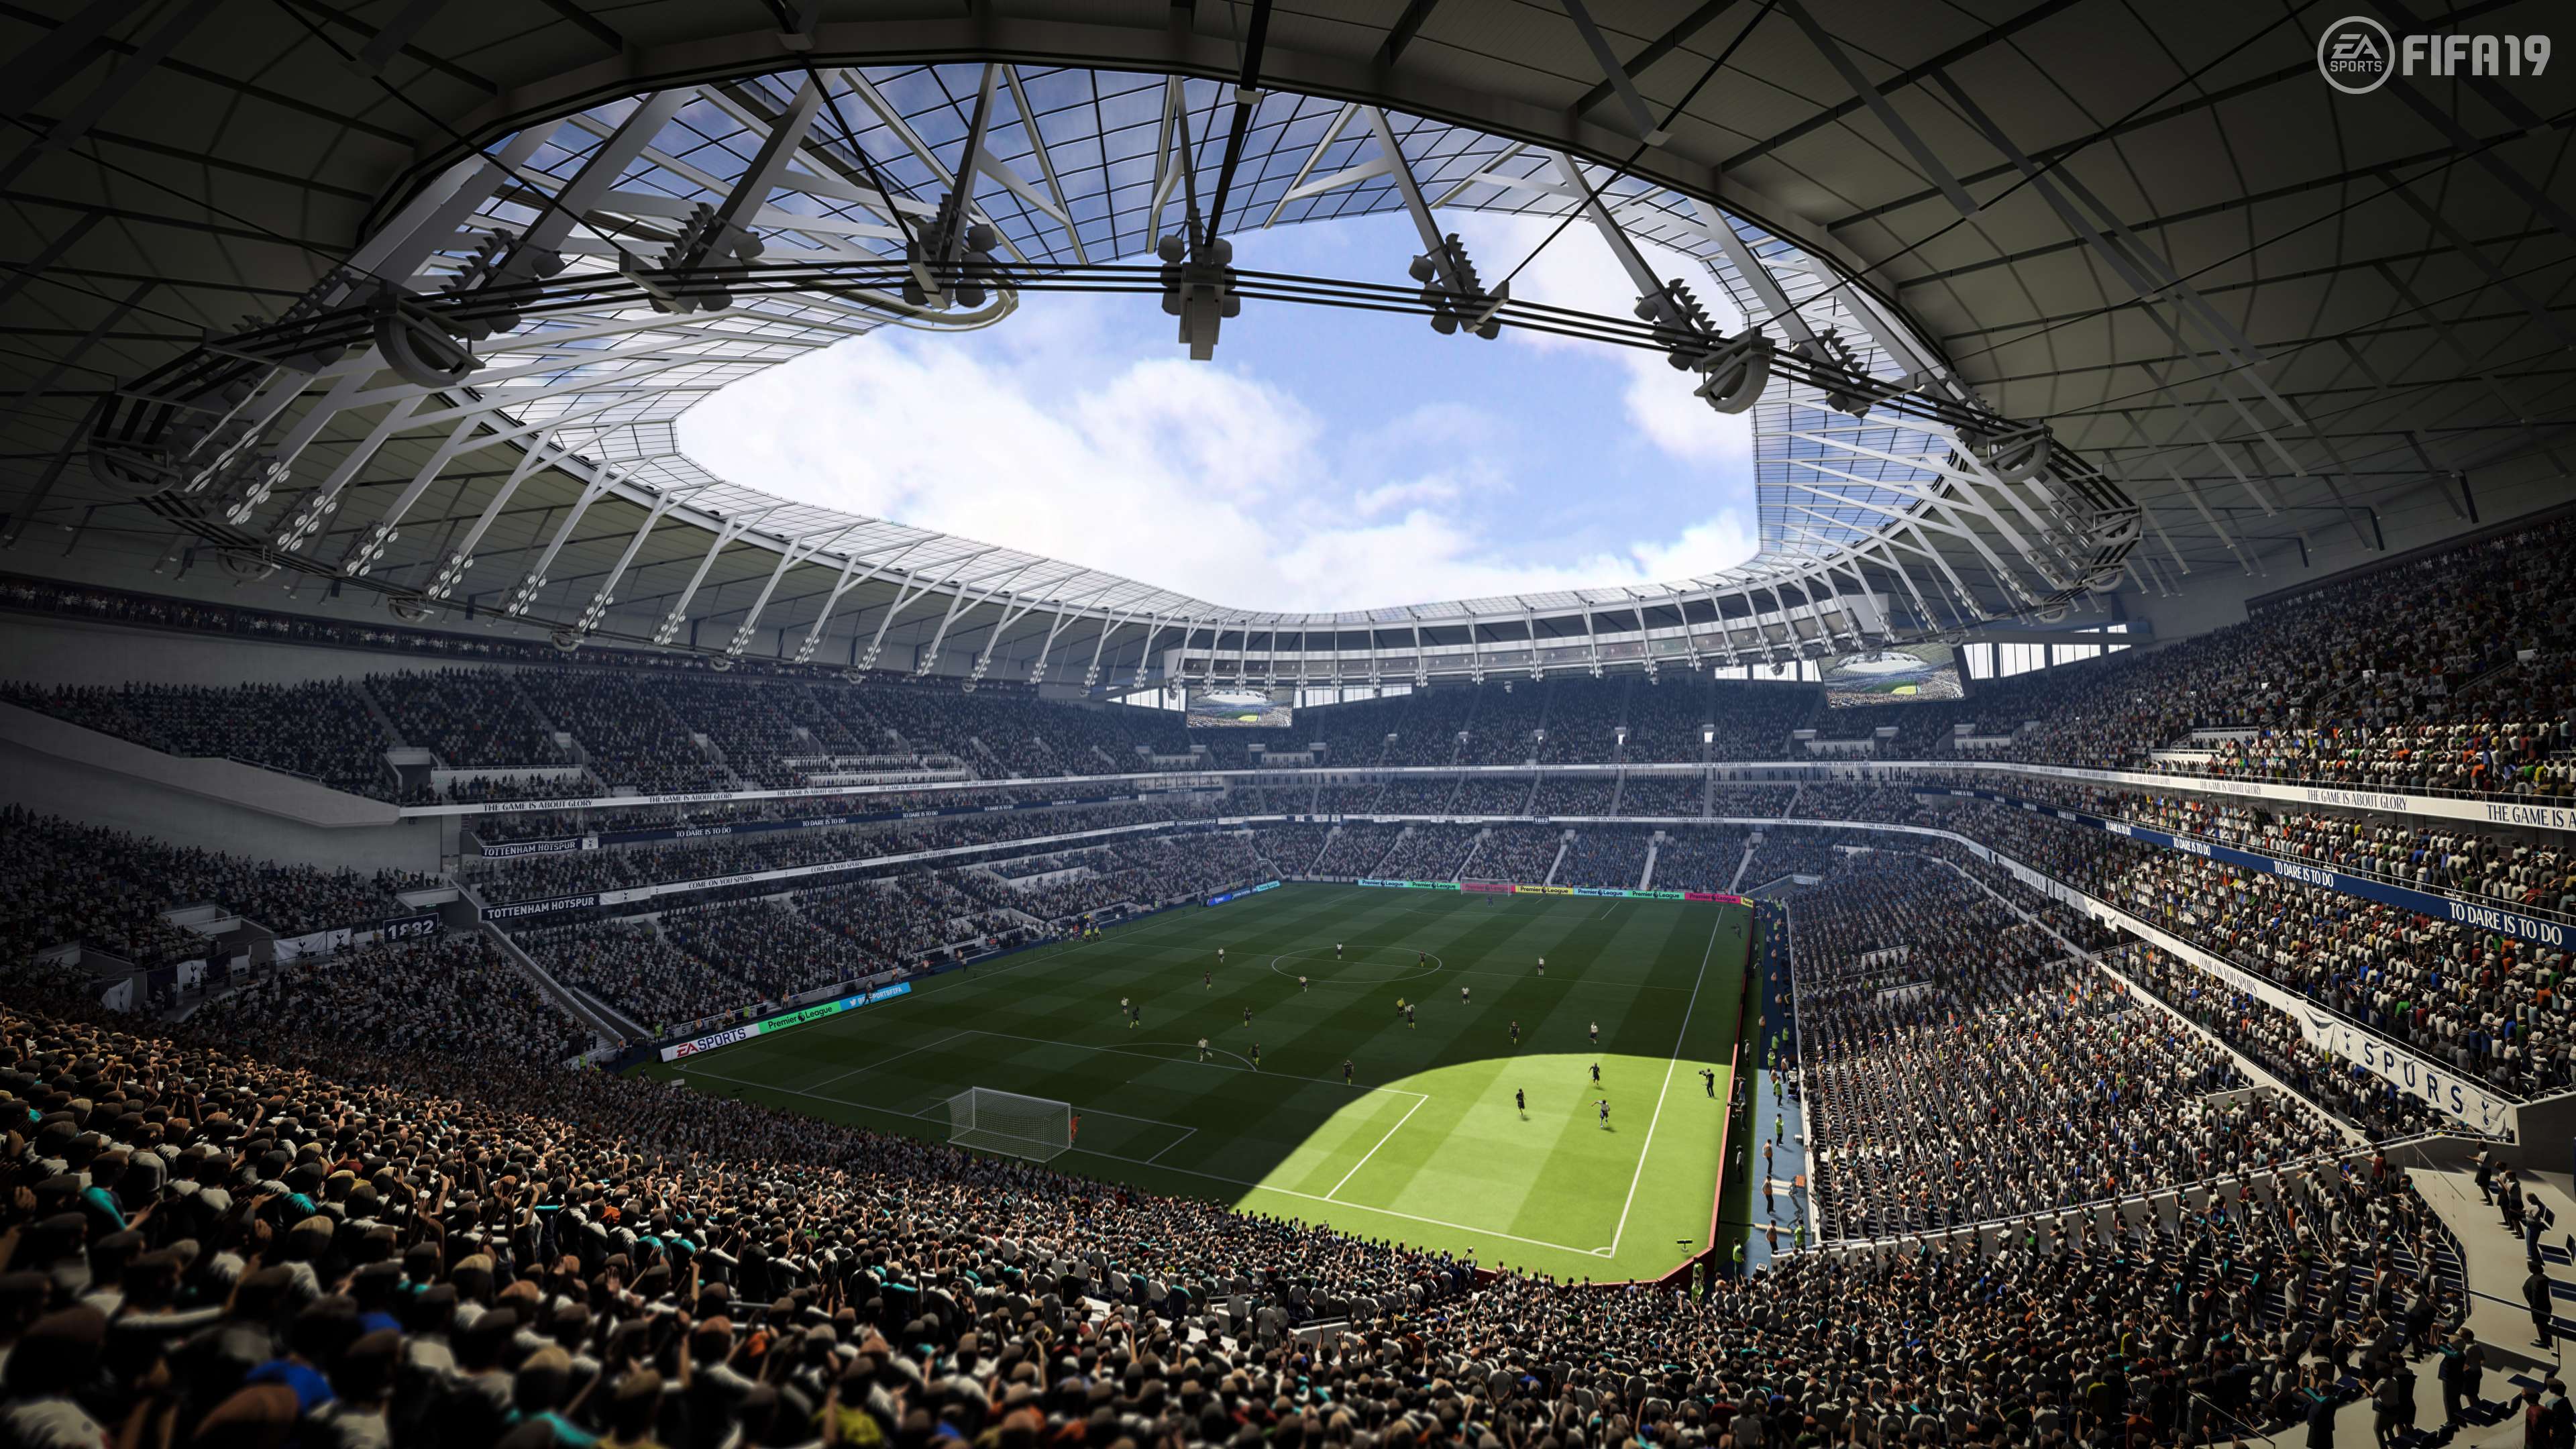 FIFA 19 Stadium Tottenham